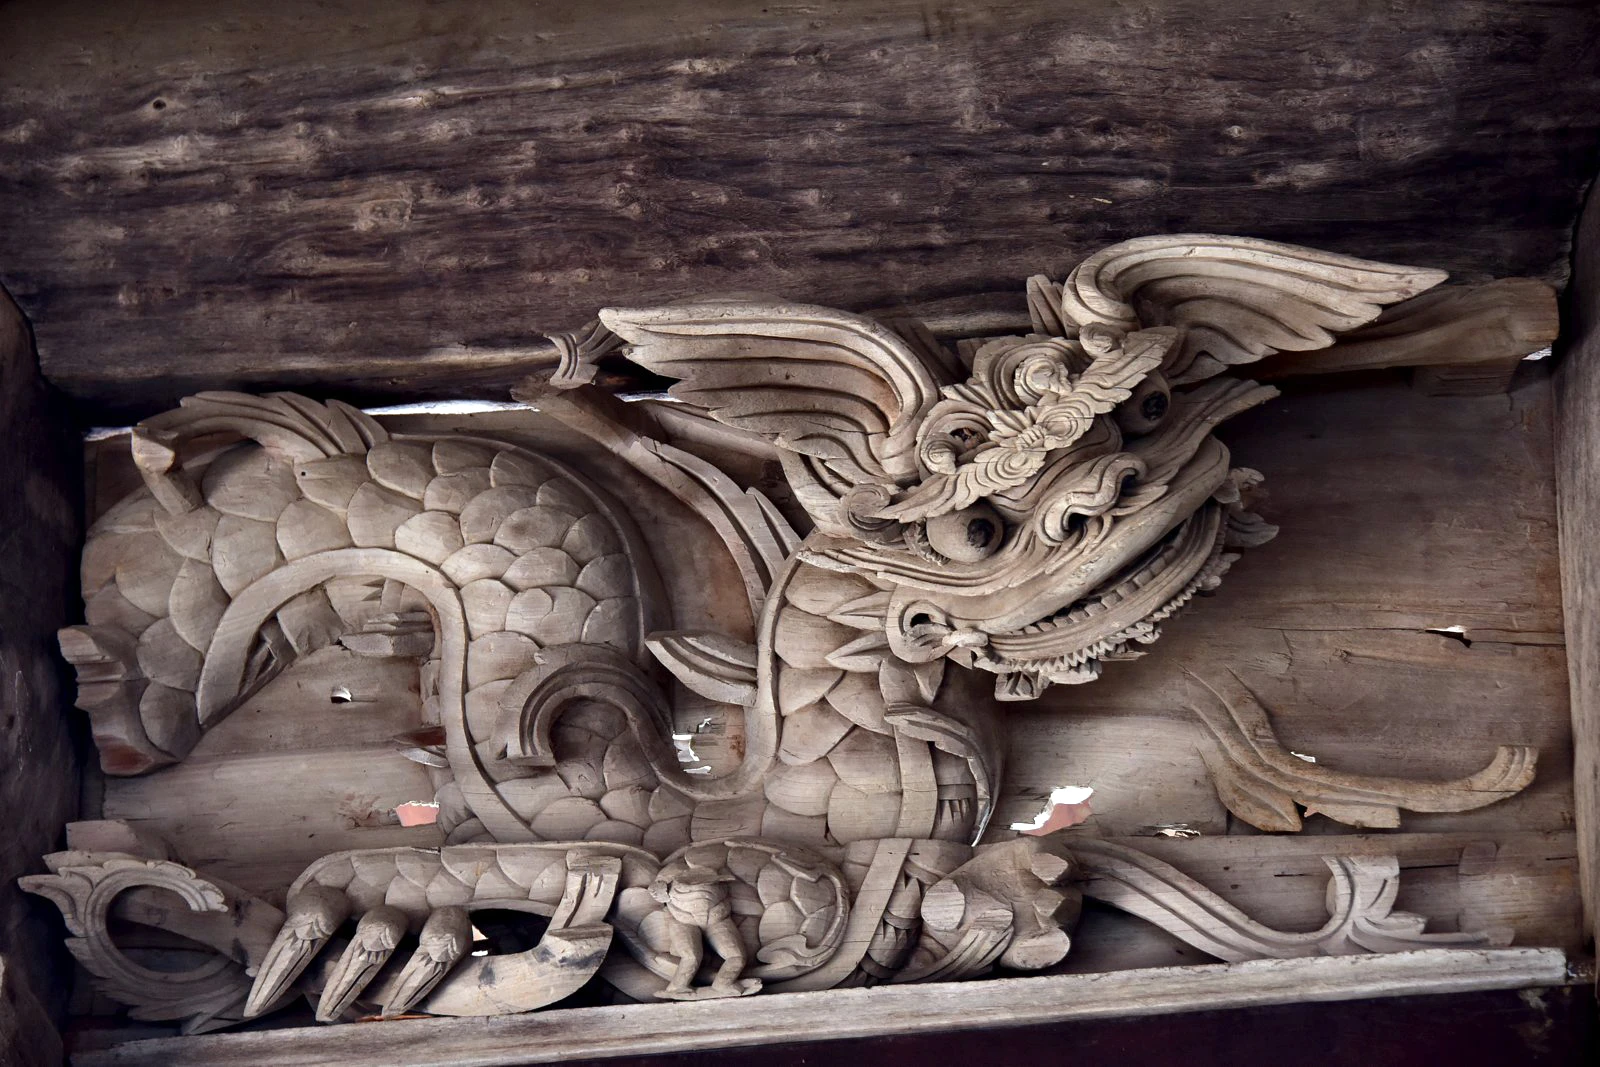 Loài rồng: Sinh vật kỳ bí với hình tượng trái ngược trong văn hóa Đông - Tây